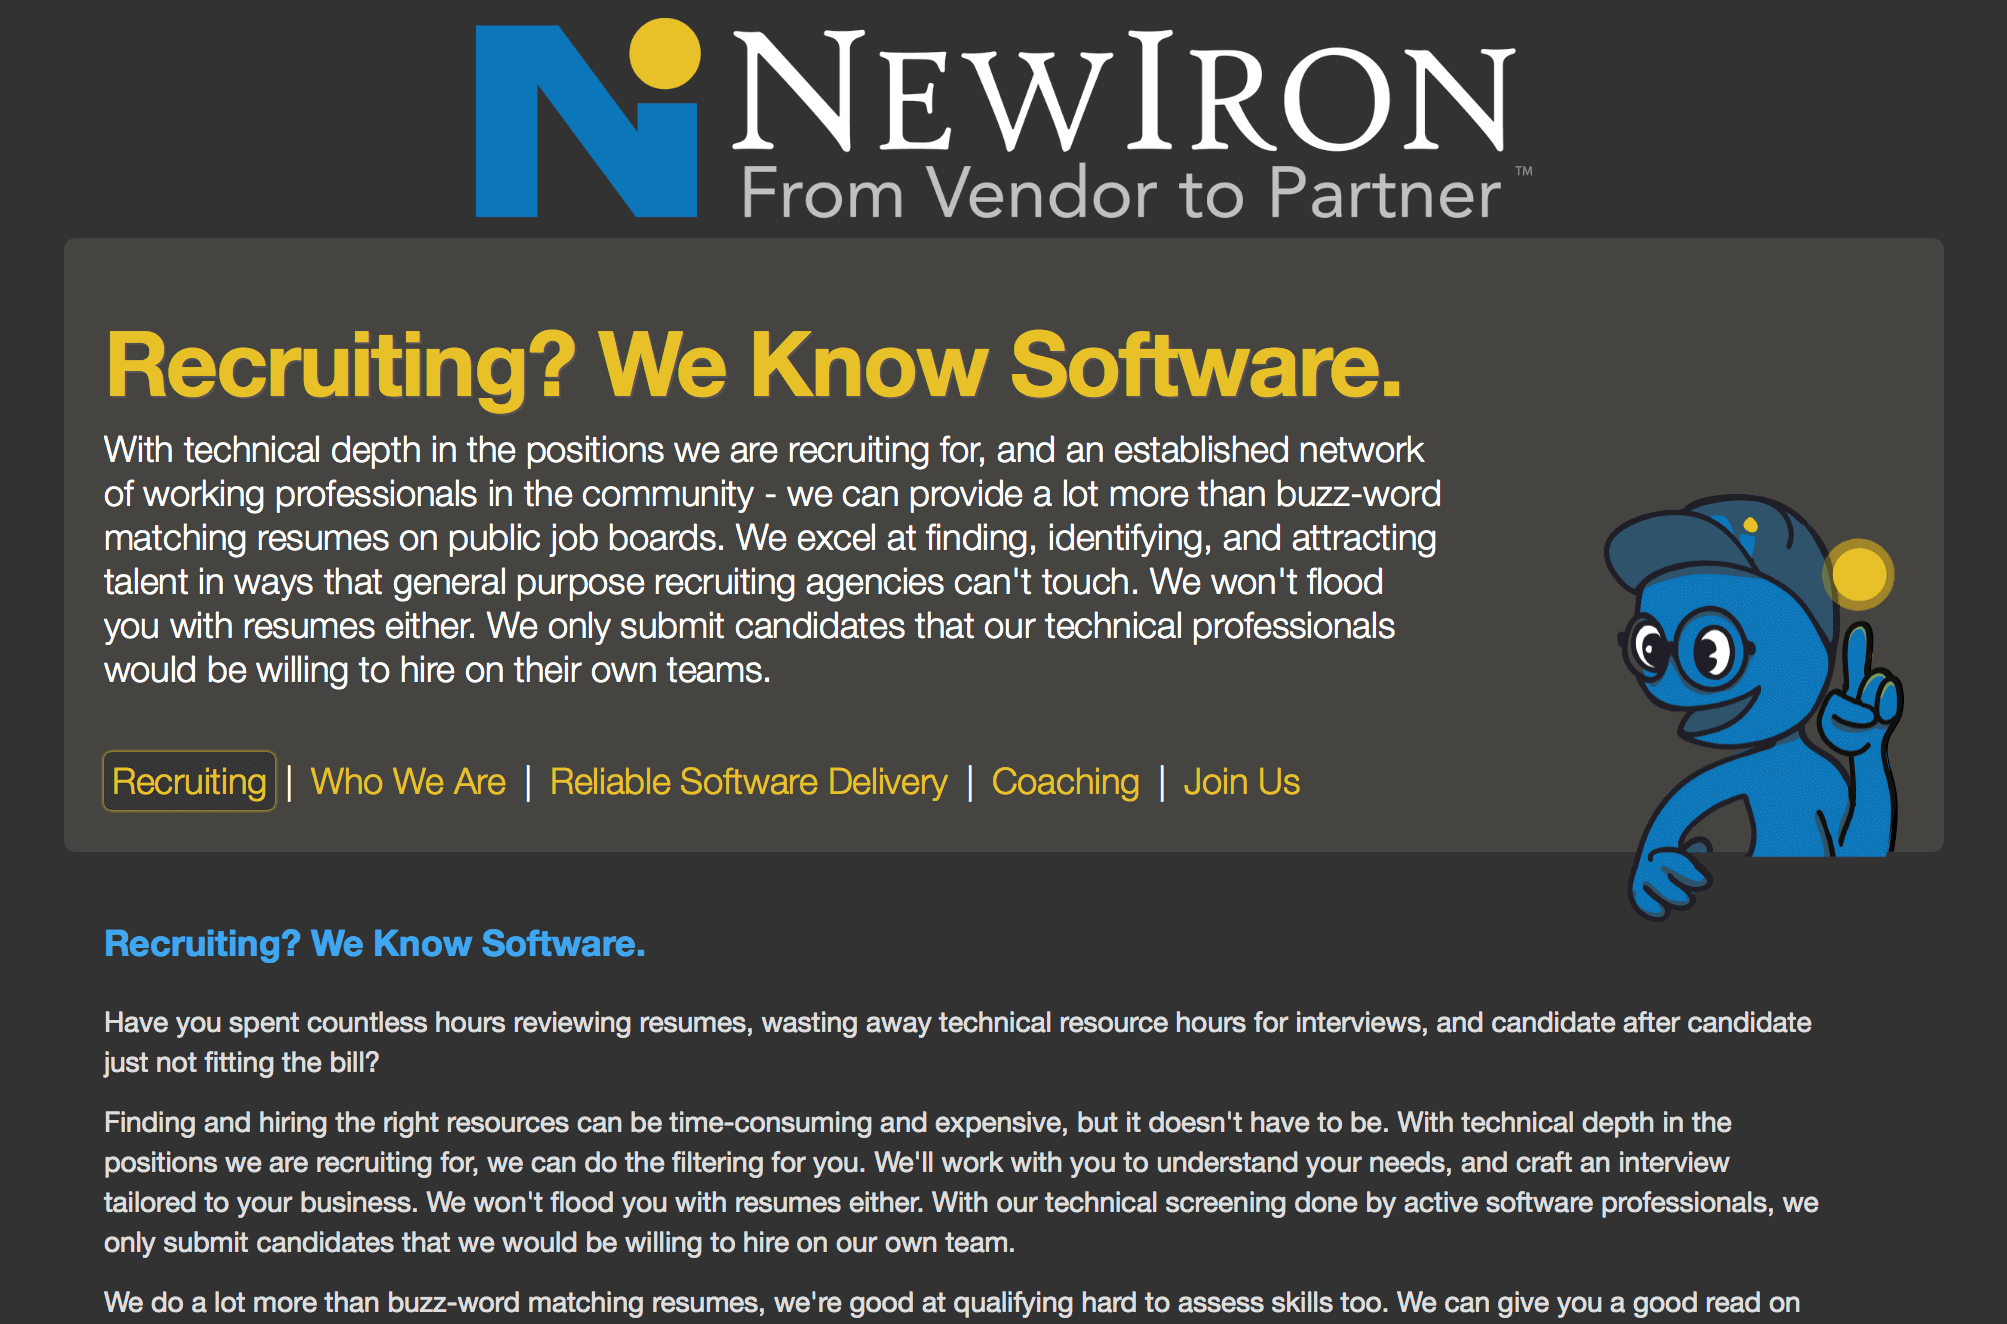 a screenshot of the New Iron website